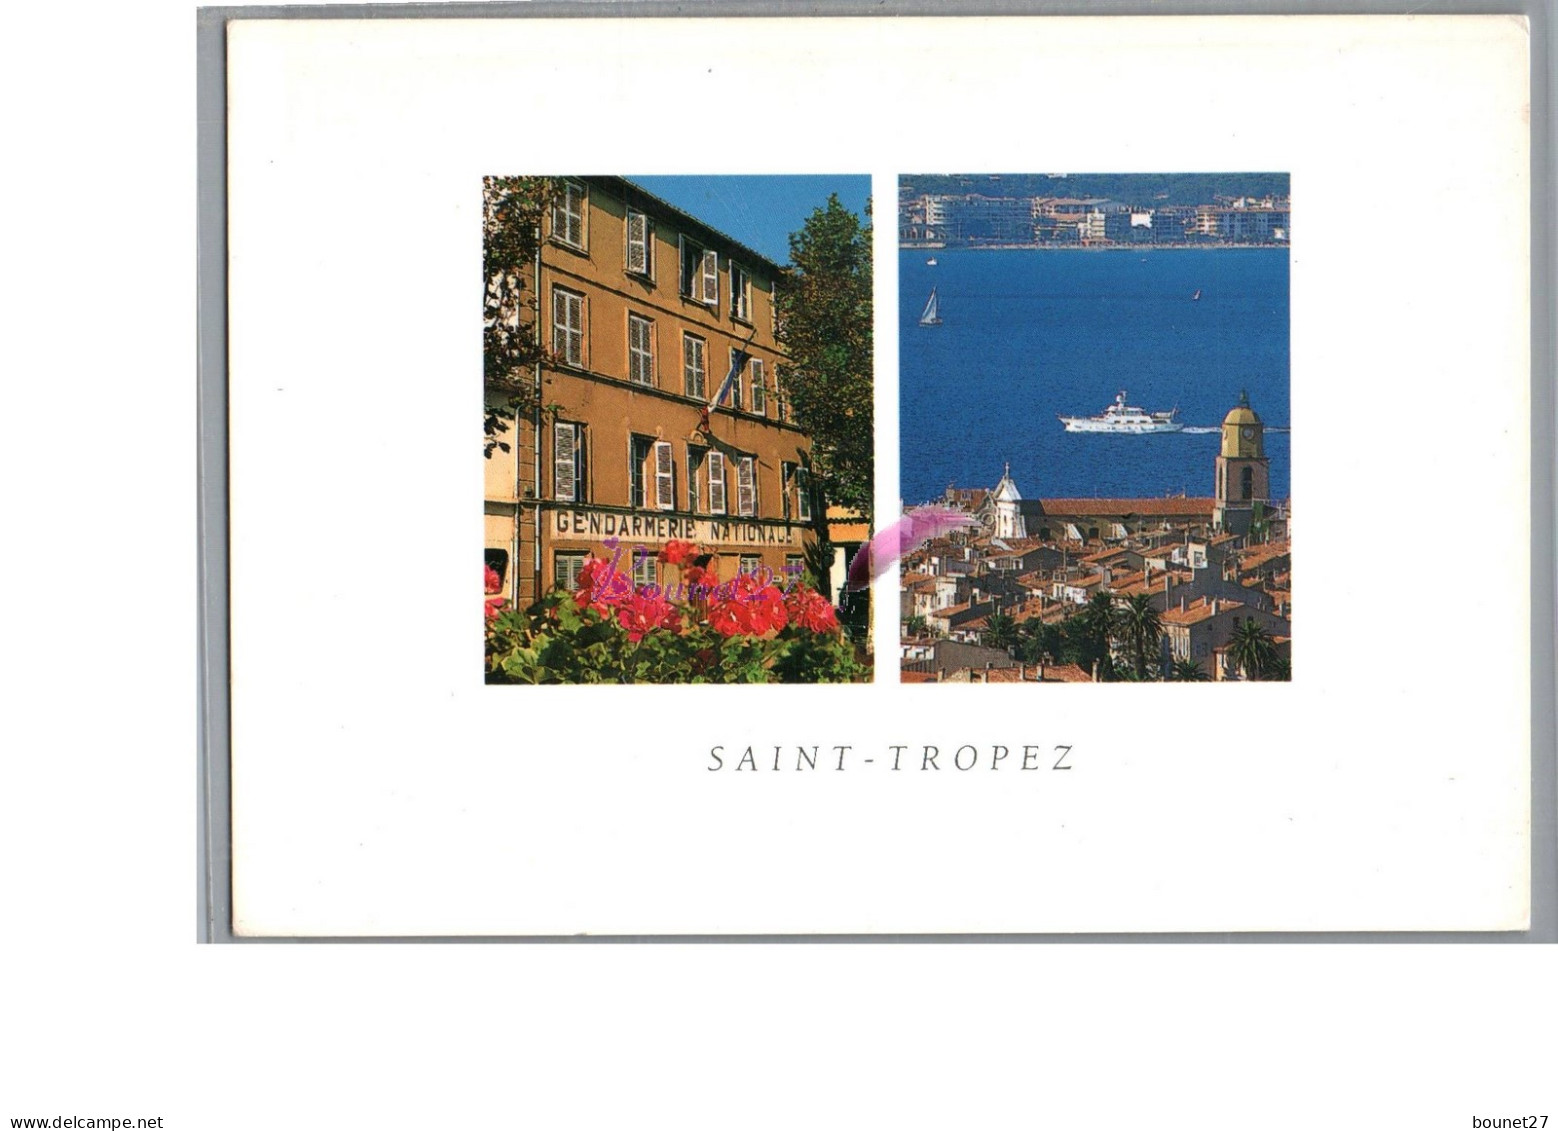 SAINT TROPEZ 83 - Vue Sur La Gendarmerie Nationale Et Vue Generale Ville Bateau  - Saint-Tropez